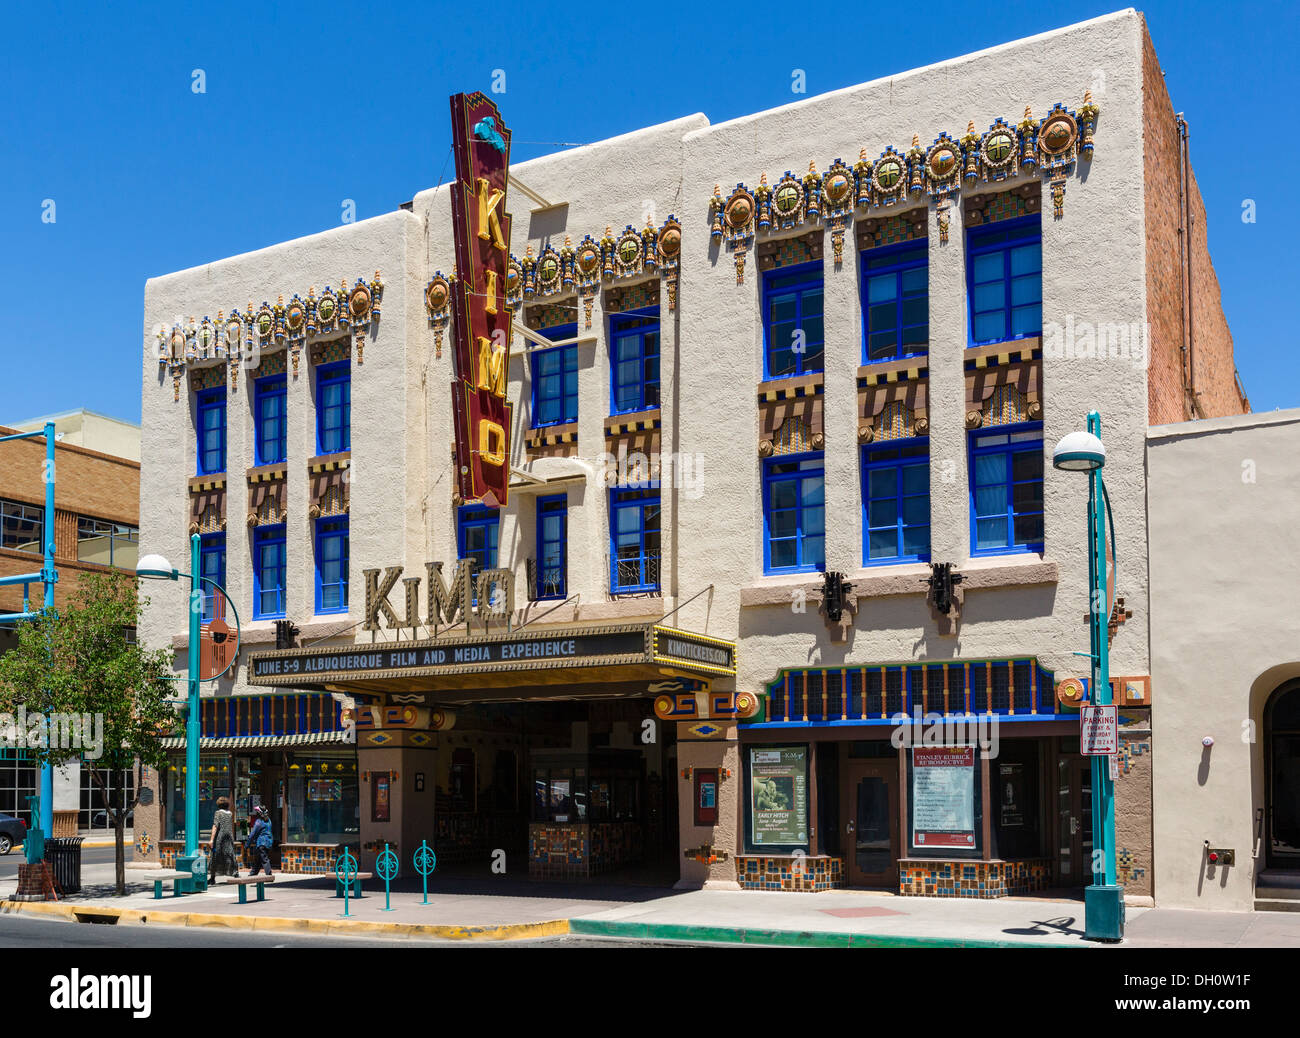 L'historique KiMo Theatre sur Central Avenue (ancienne route 66) au centre-ville d'Albuquerque, New Mexico, USA Banque D'Images